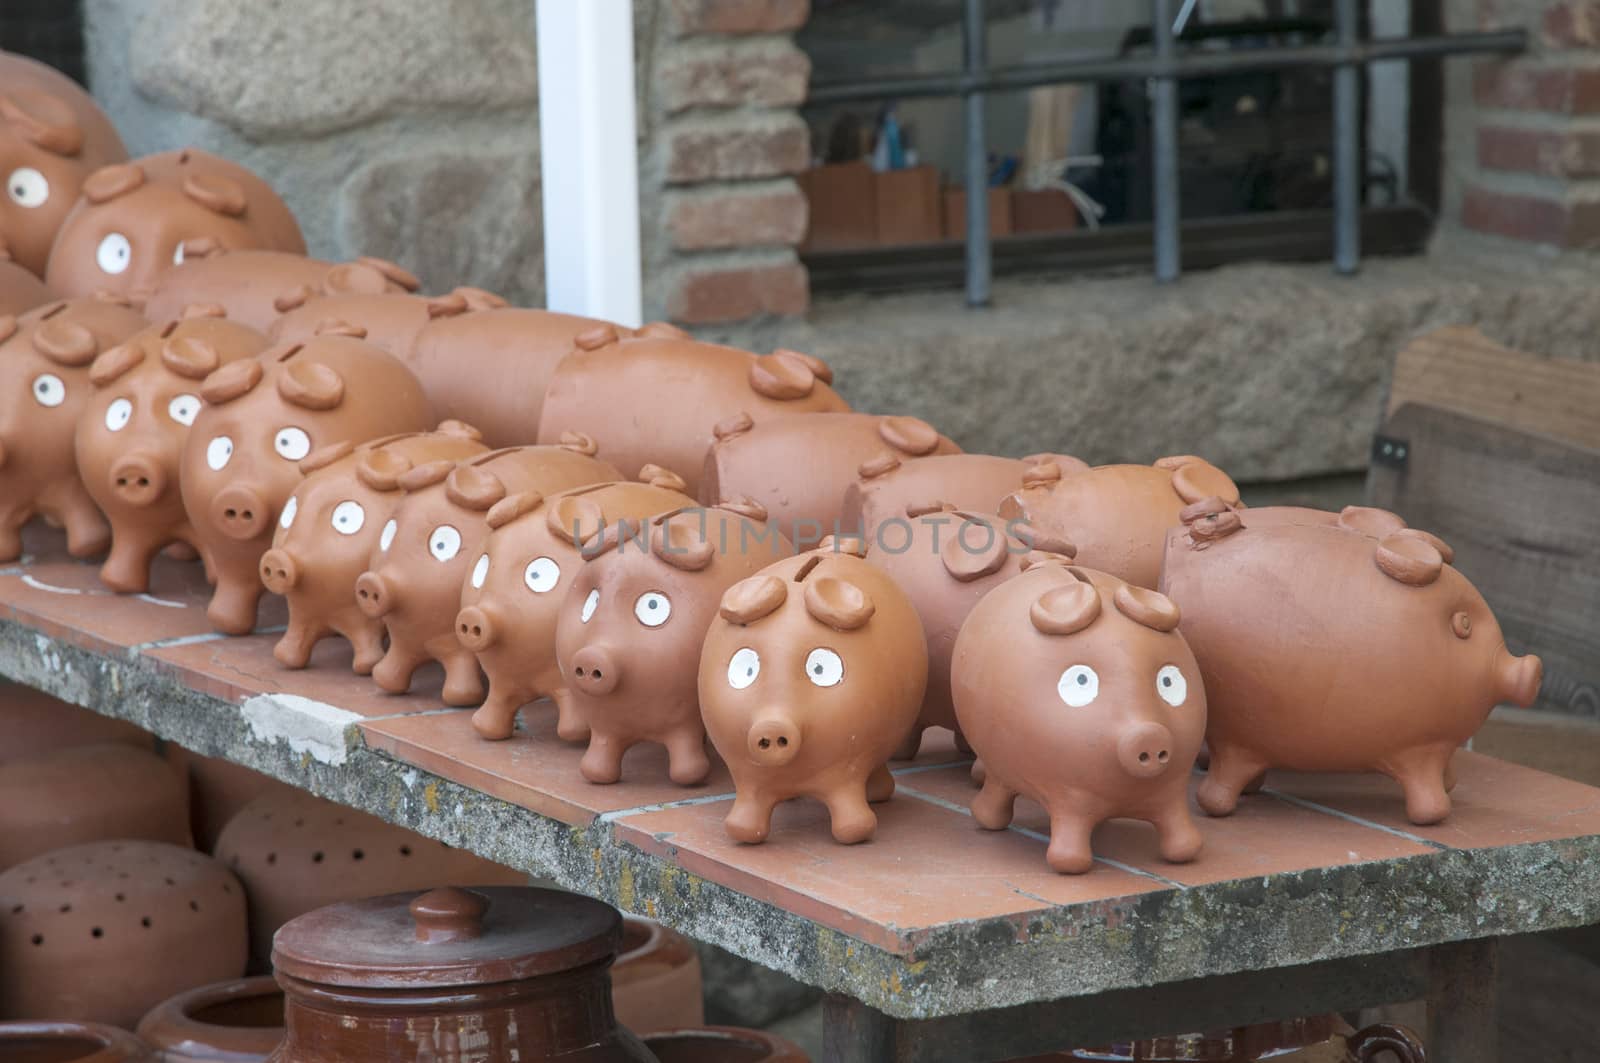 ceramic piggy bank all together